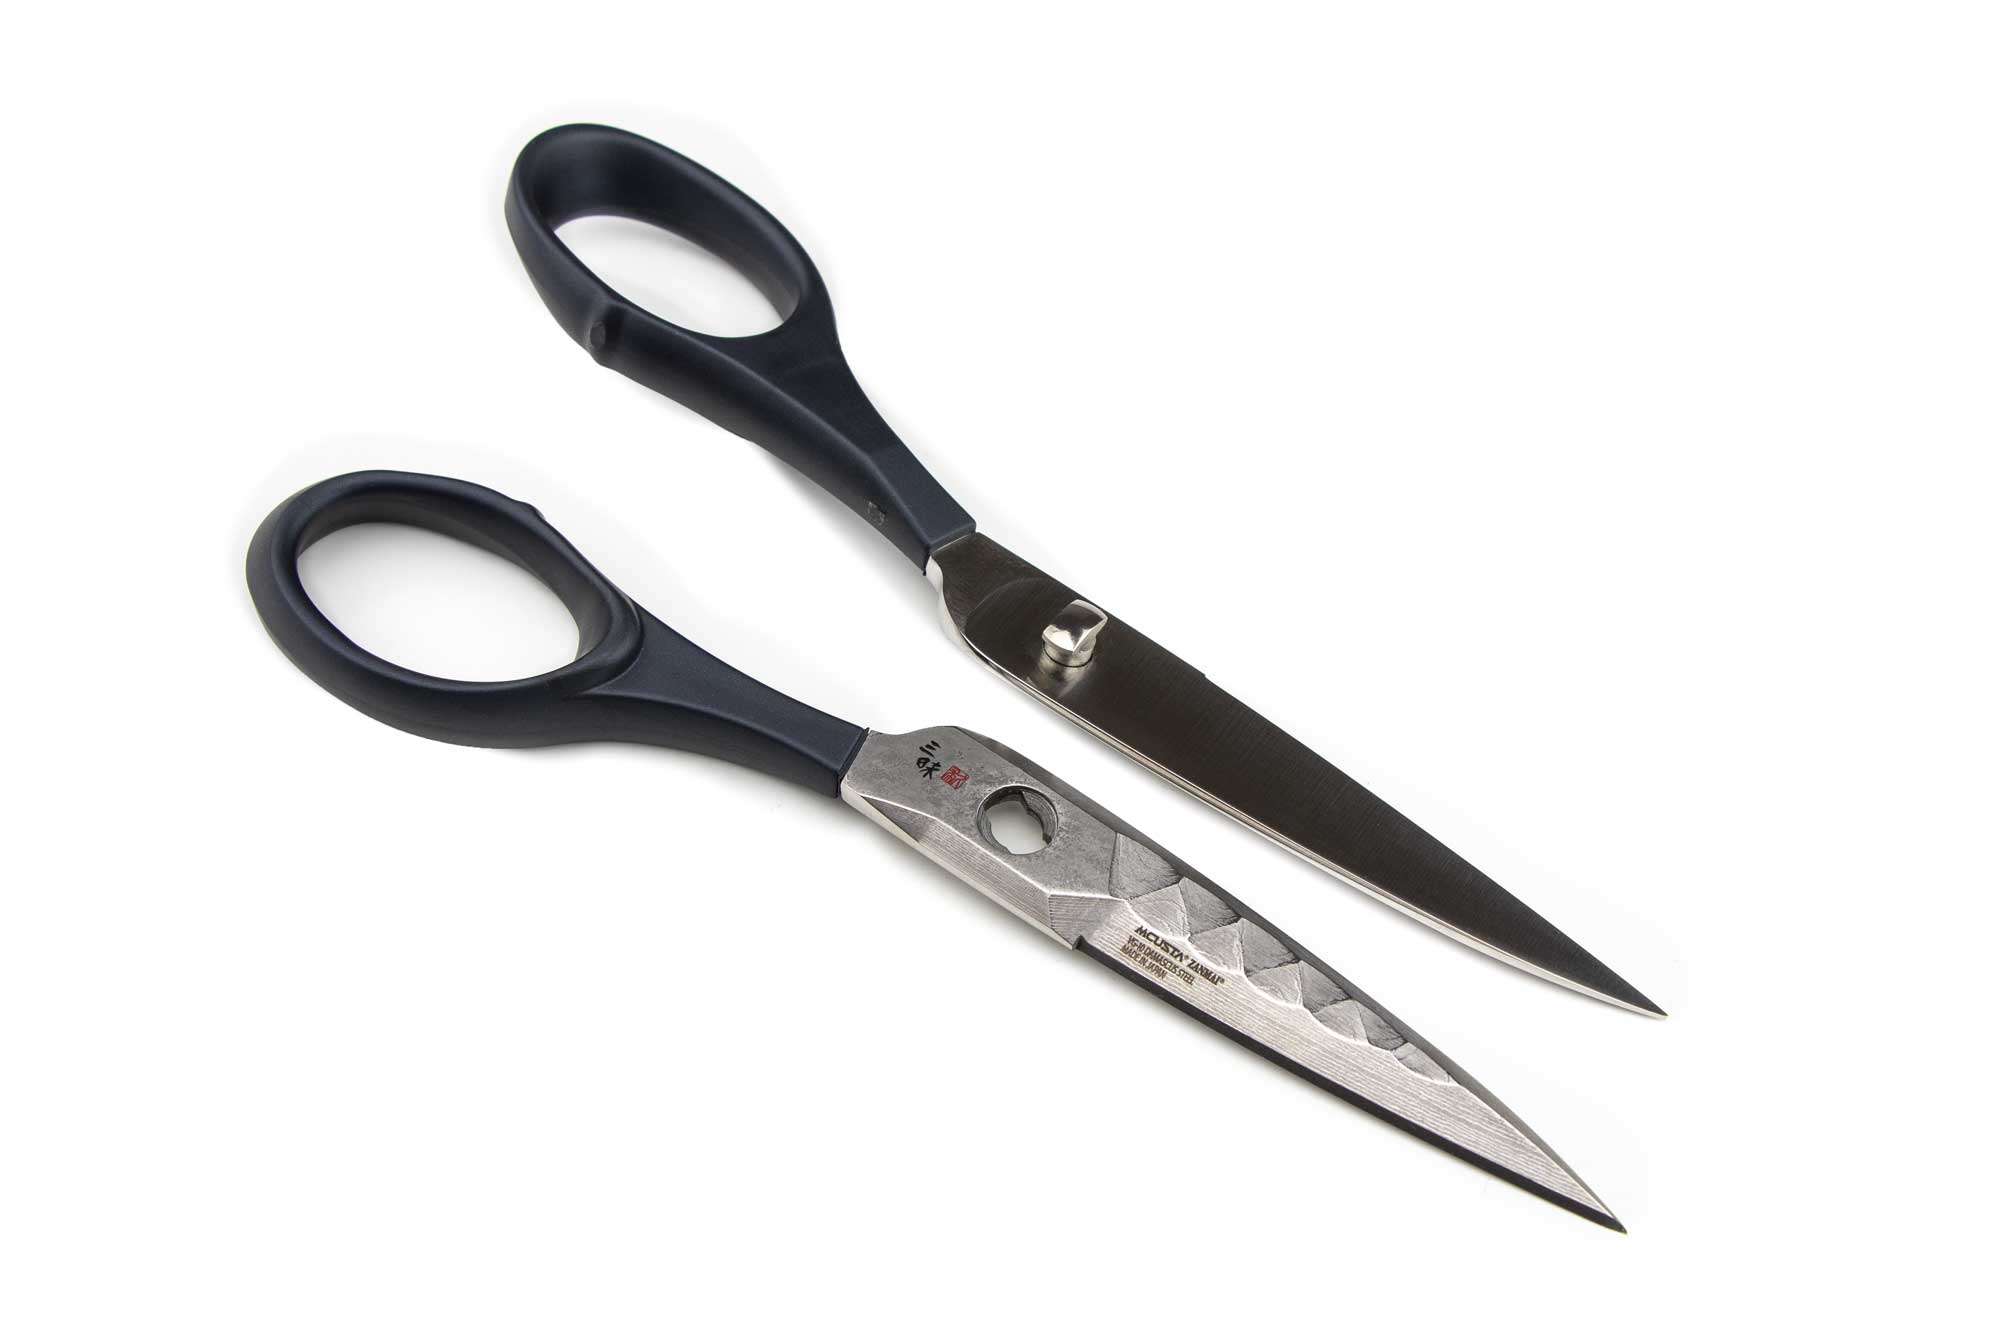 Guffman Smart Cutter kitchen scissors review